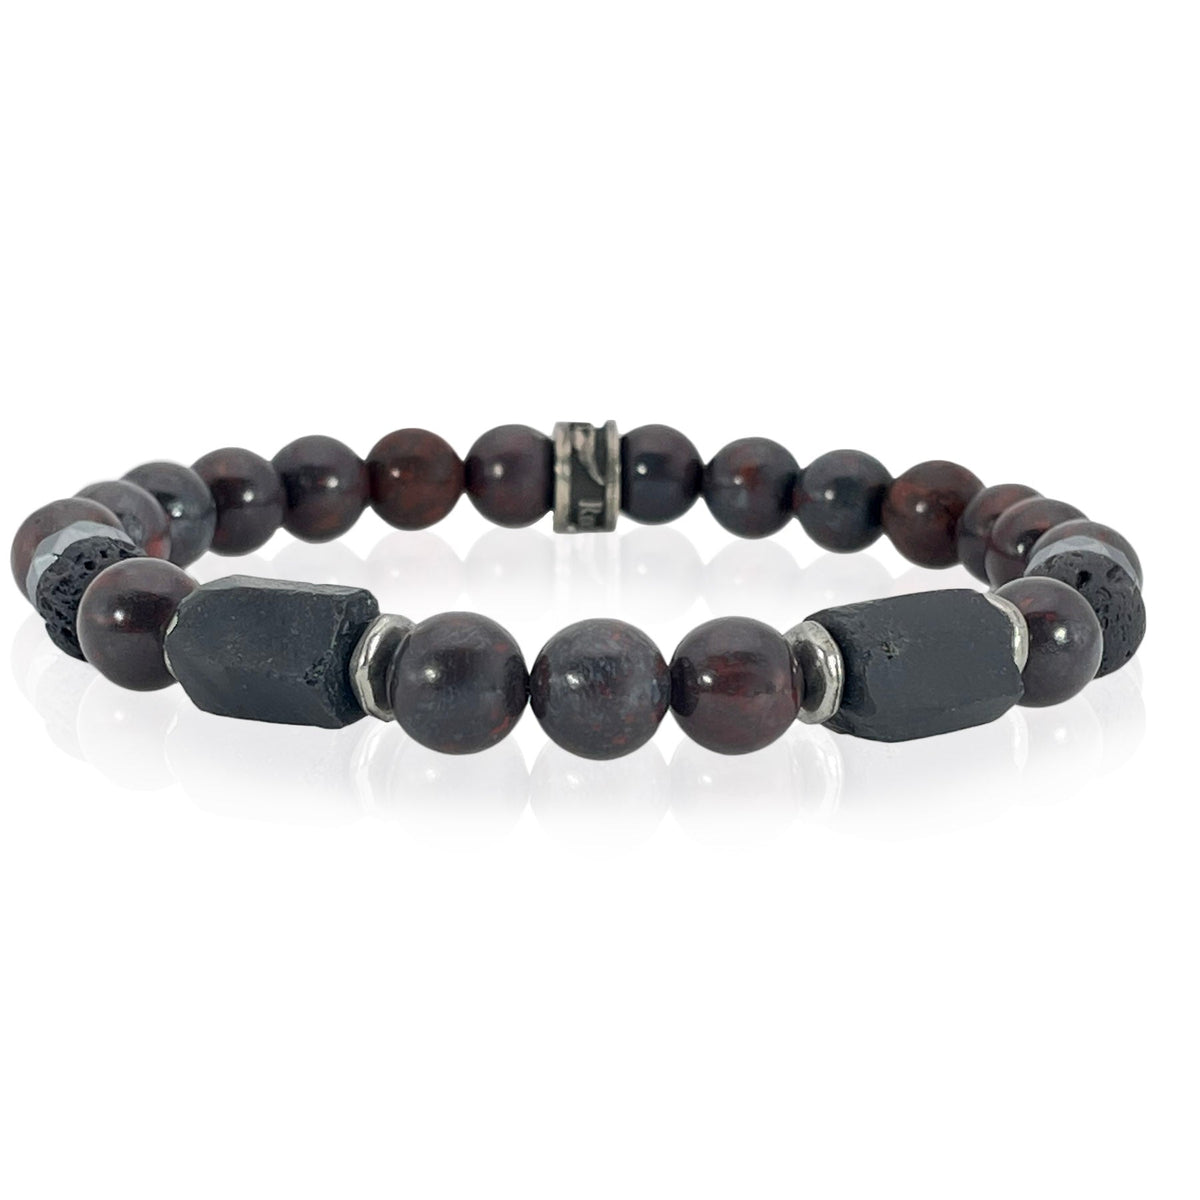 Red and black minimalist gemstone bracelet for men